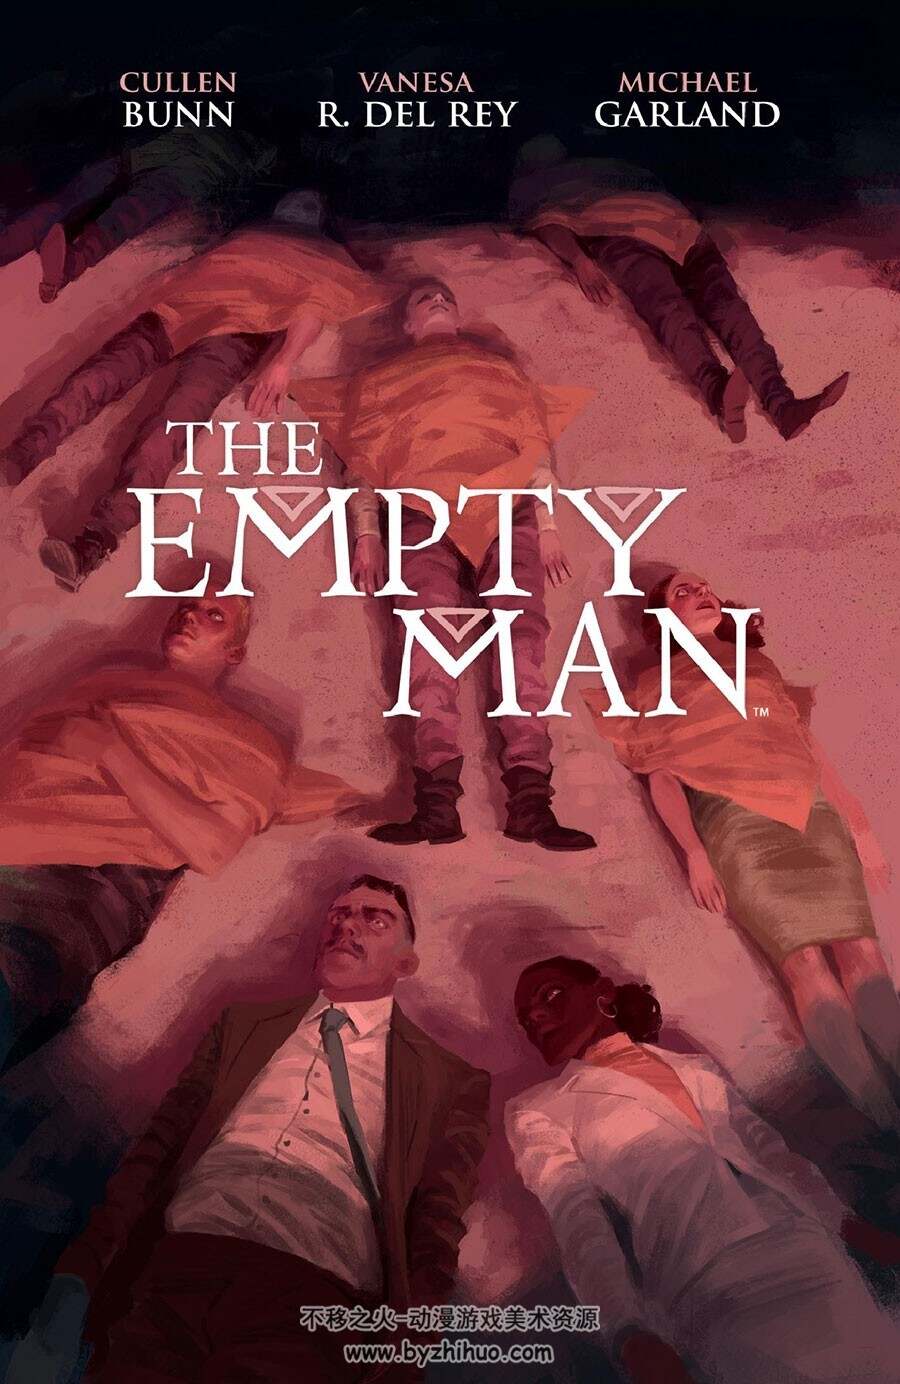 The Empty Man Cullen Bunn 漫画下载